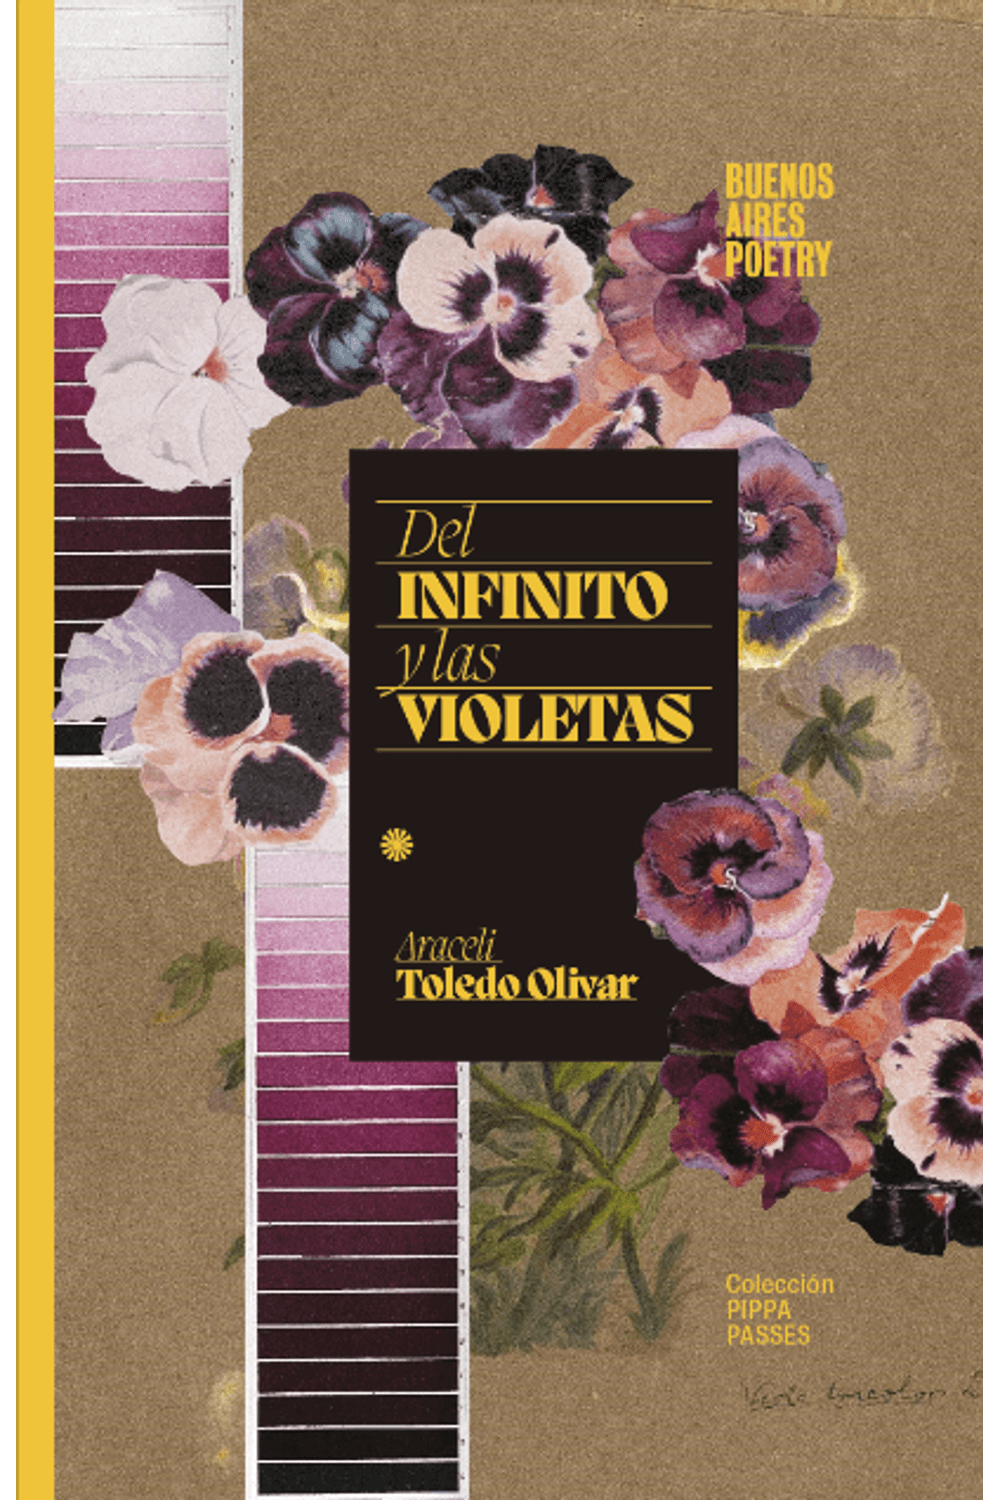 bm-del-infinito-y-las-violetas-buenosaires-poetry-9789874197986